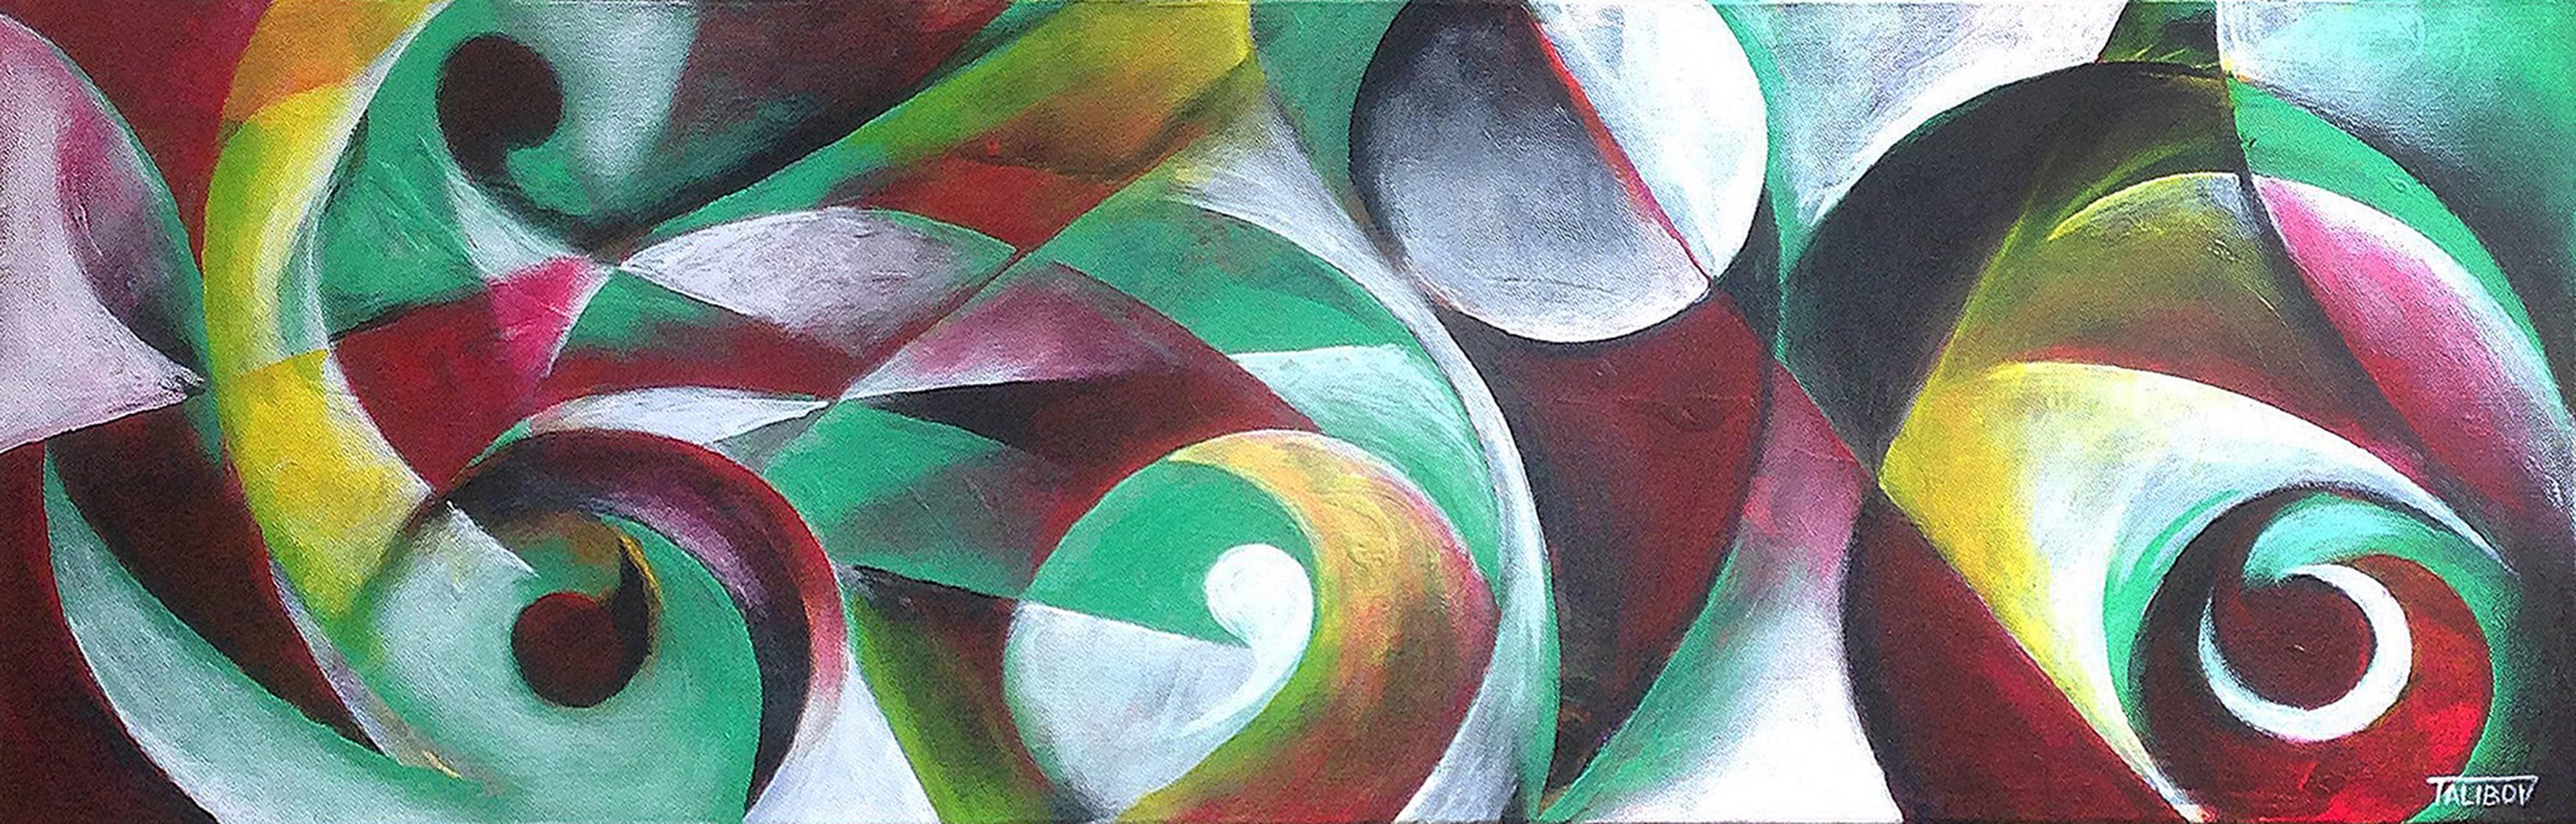 Ilgar Talibov Abstract Painting - Unassuming Bliss